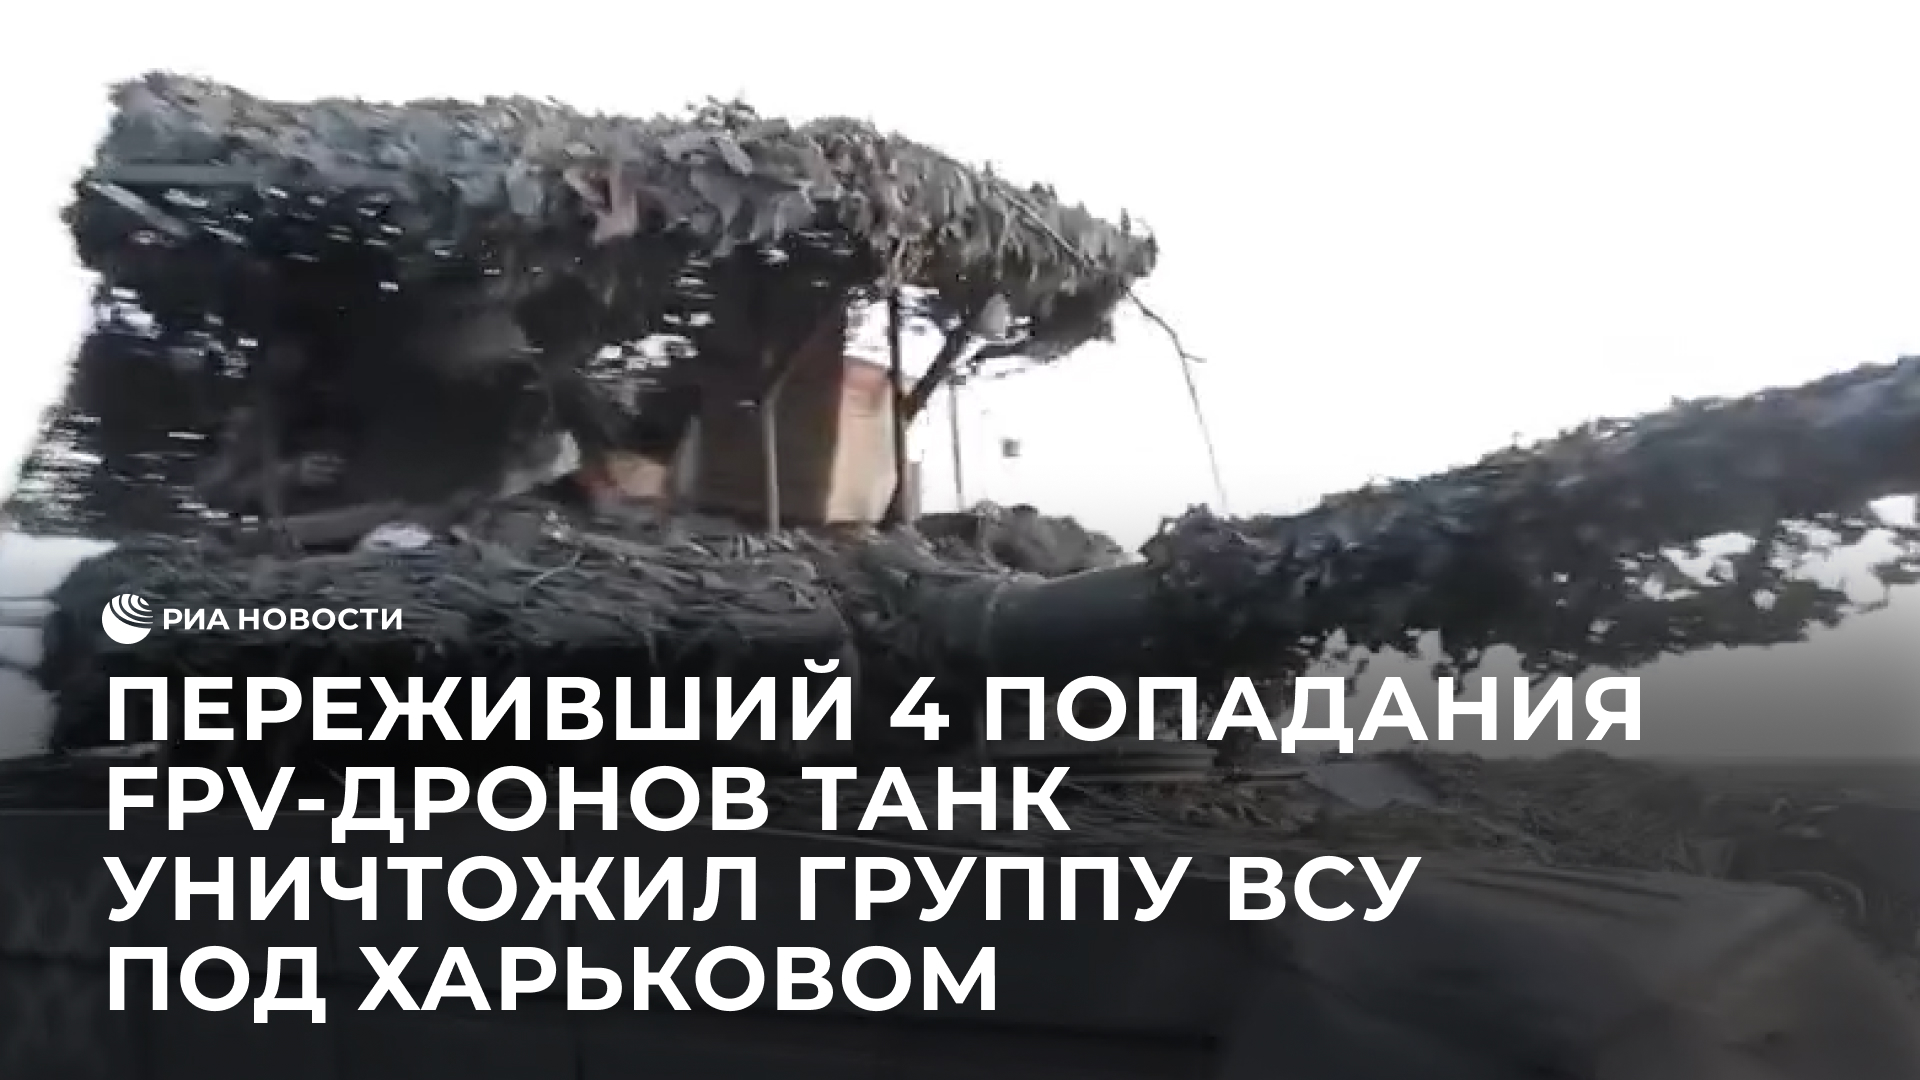 Переживший 4 попадания FPV-дронов танк уничтожил группу ВСУ под Харьковом